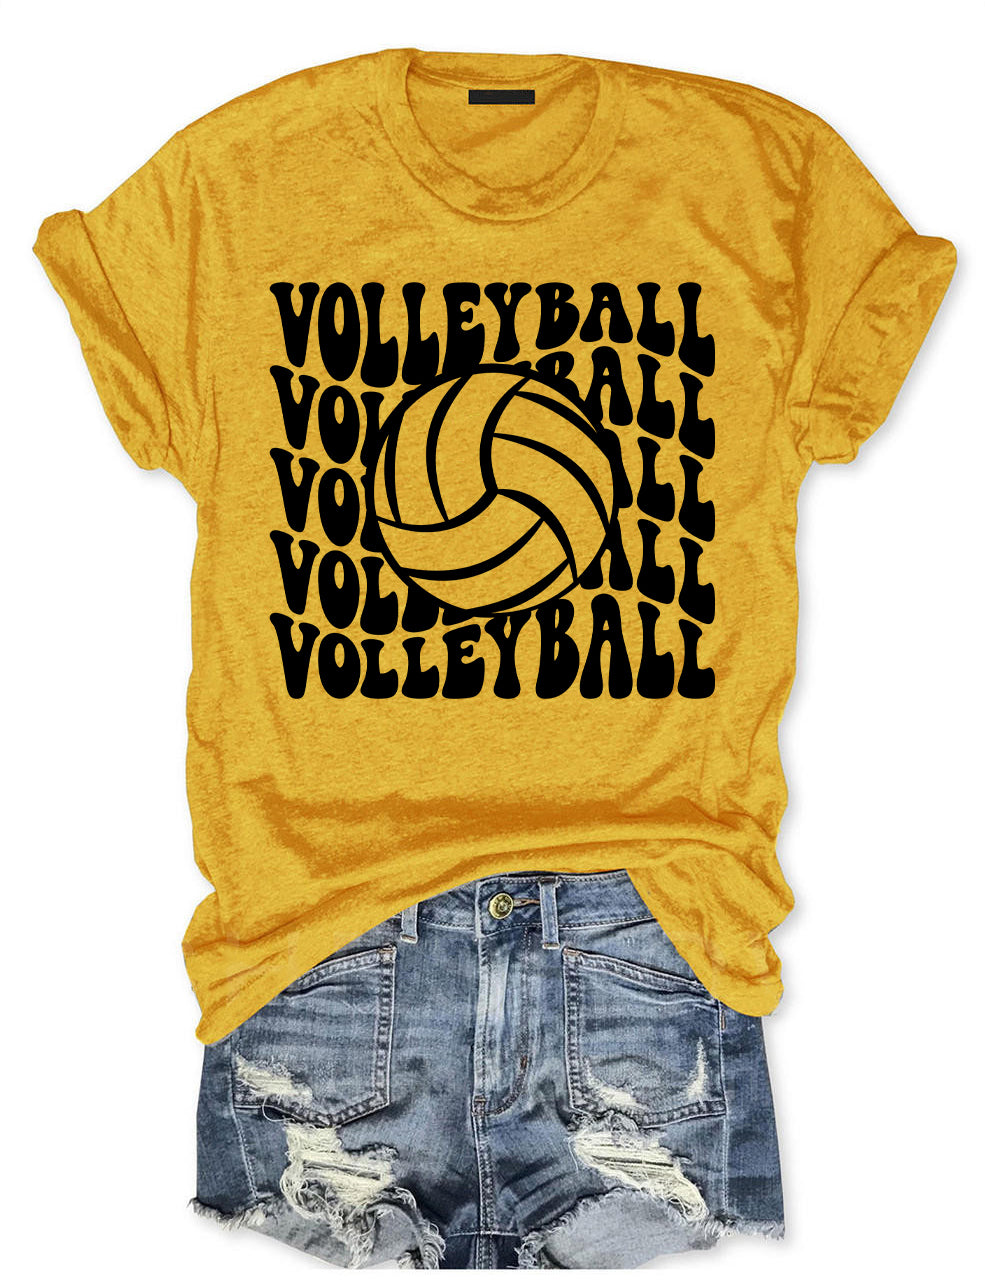 Volleyball Fan T-shirt